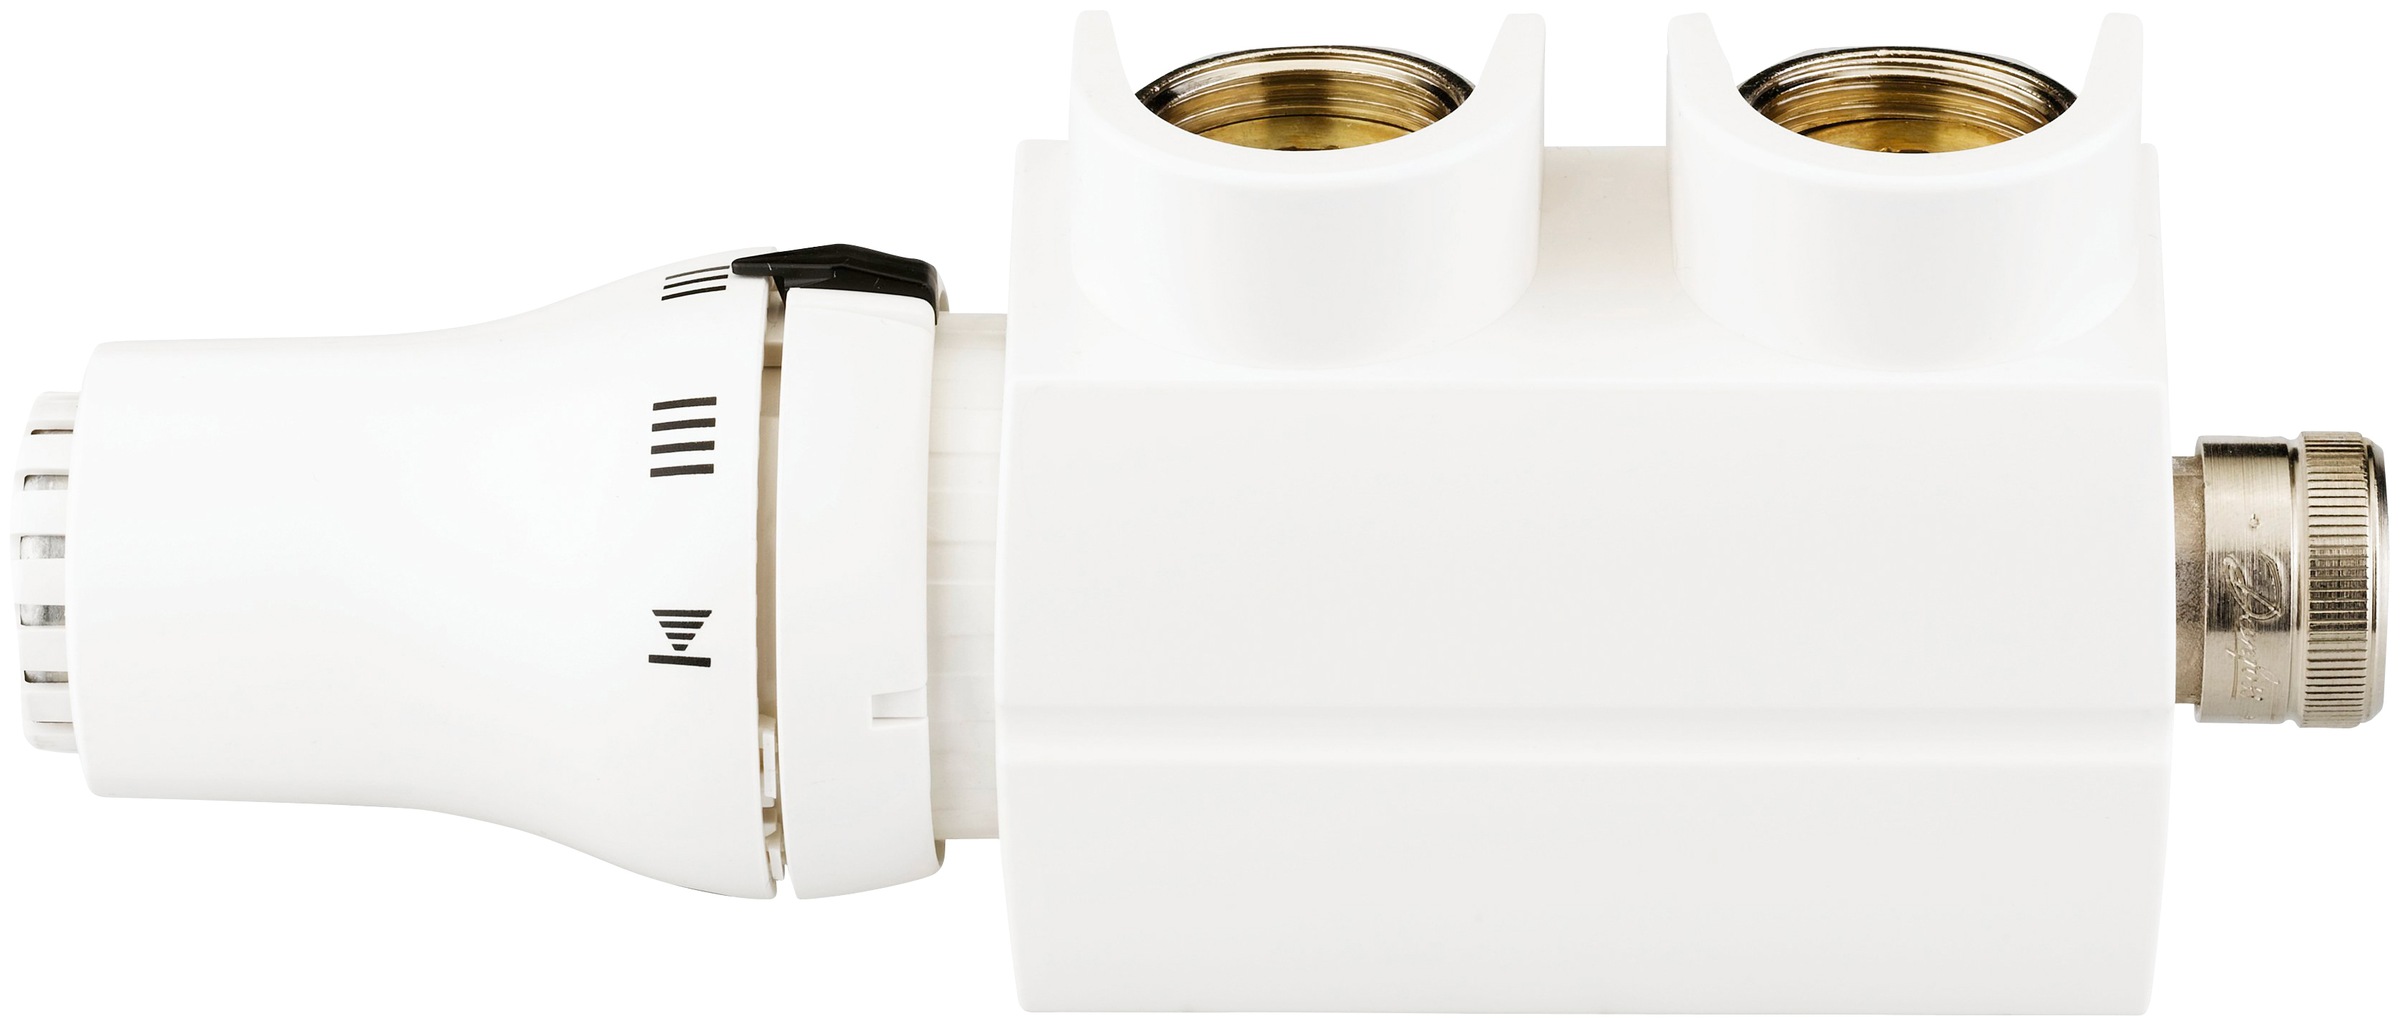 Sanotechnik Heizkörperthermostat »Badheizkörper-Regler«, eckig, Anschluss mittig-unten, mit Thermostatkopf